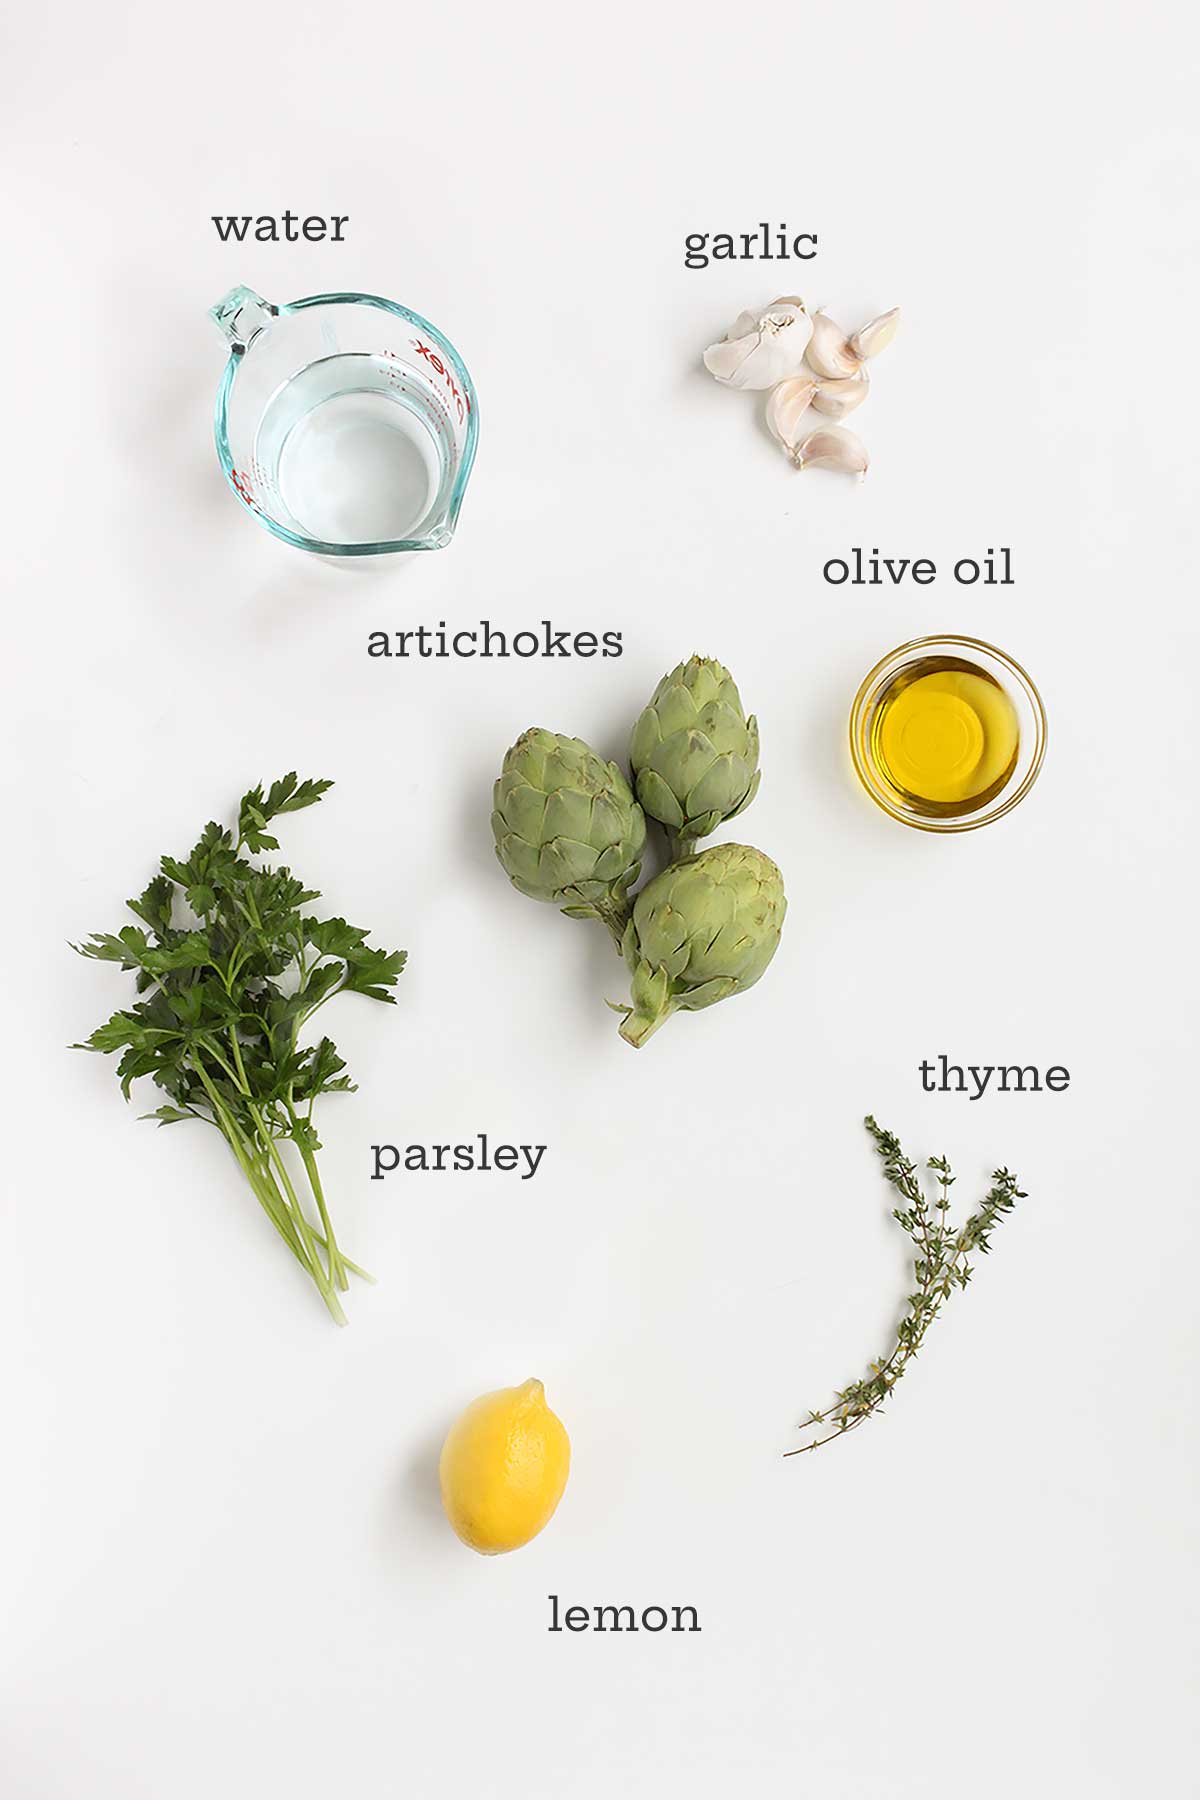 Ingredienser för bräserade kronärtskockor - kronärtskockor, persilja, timjan, citron, vitlök, olja och vatten.